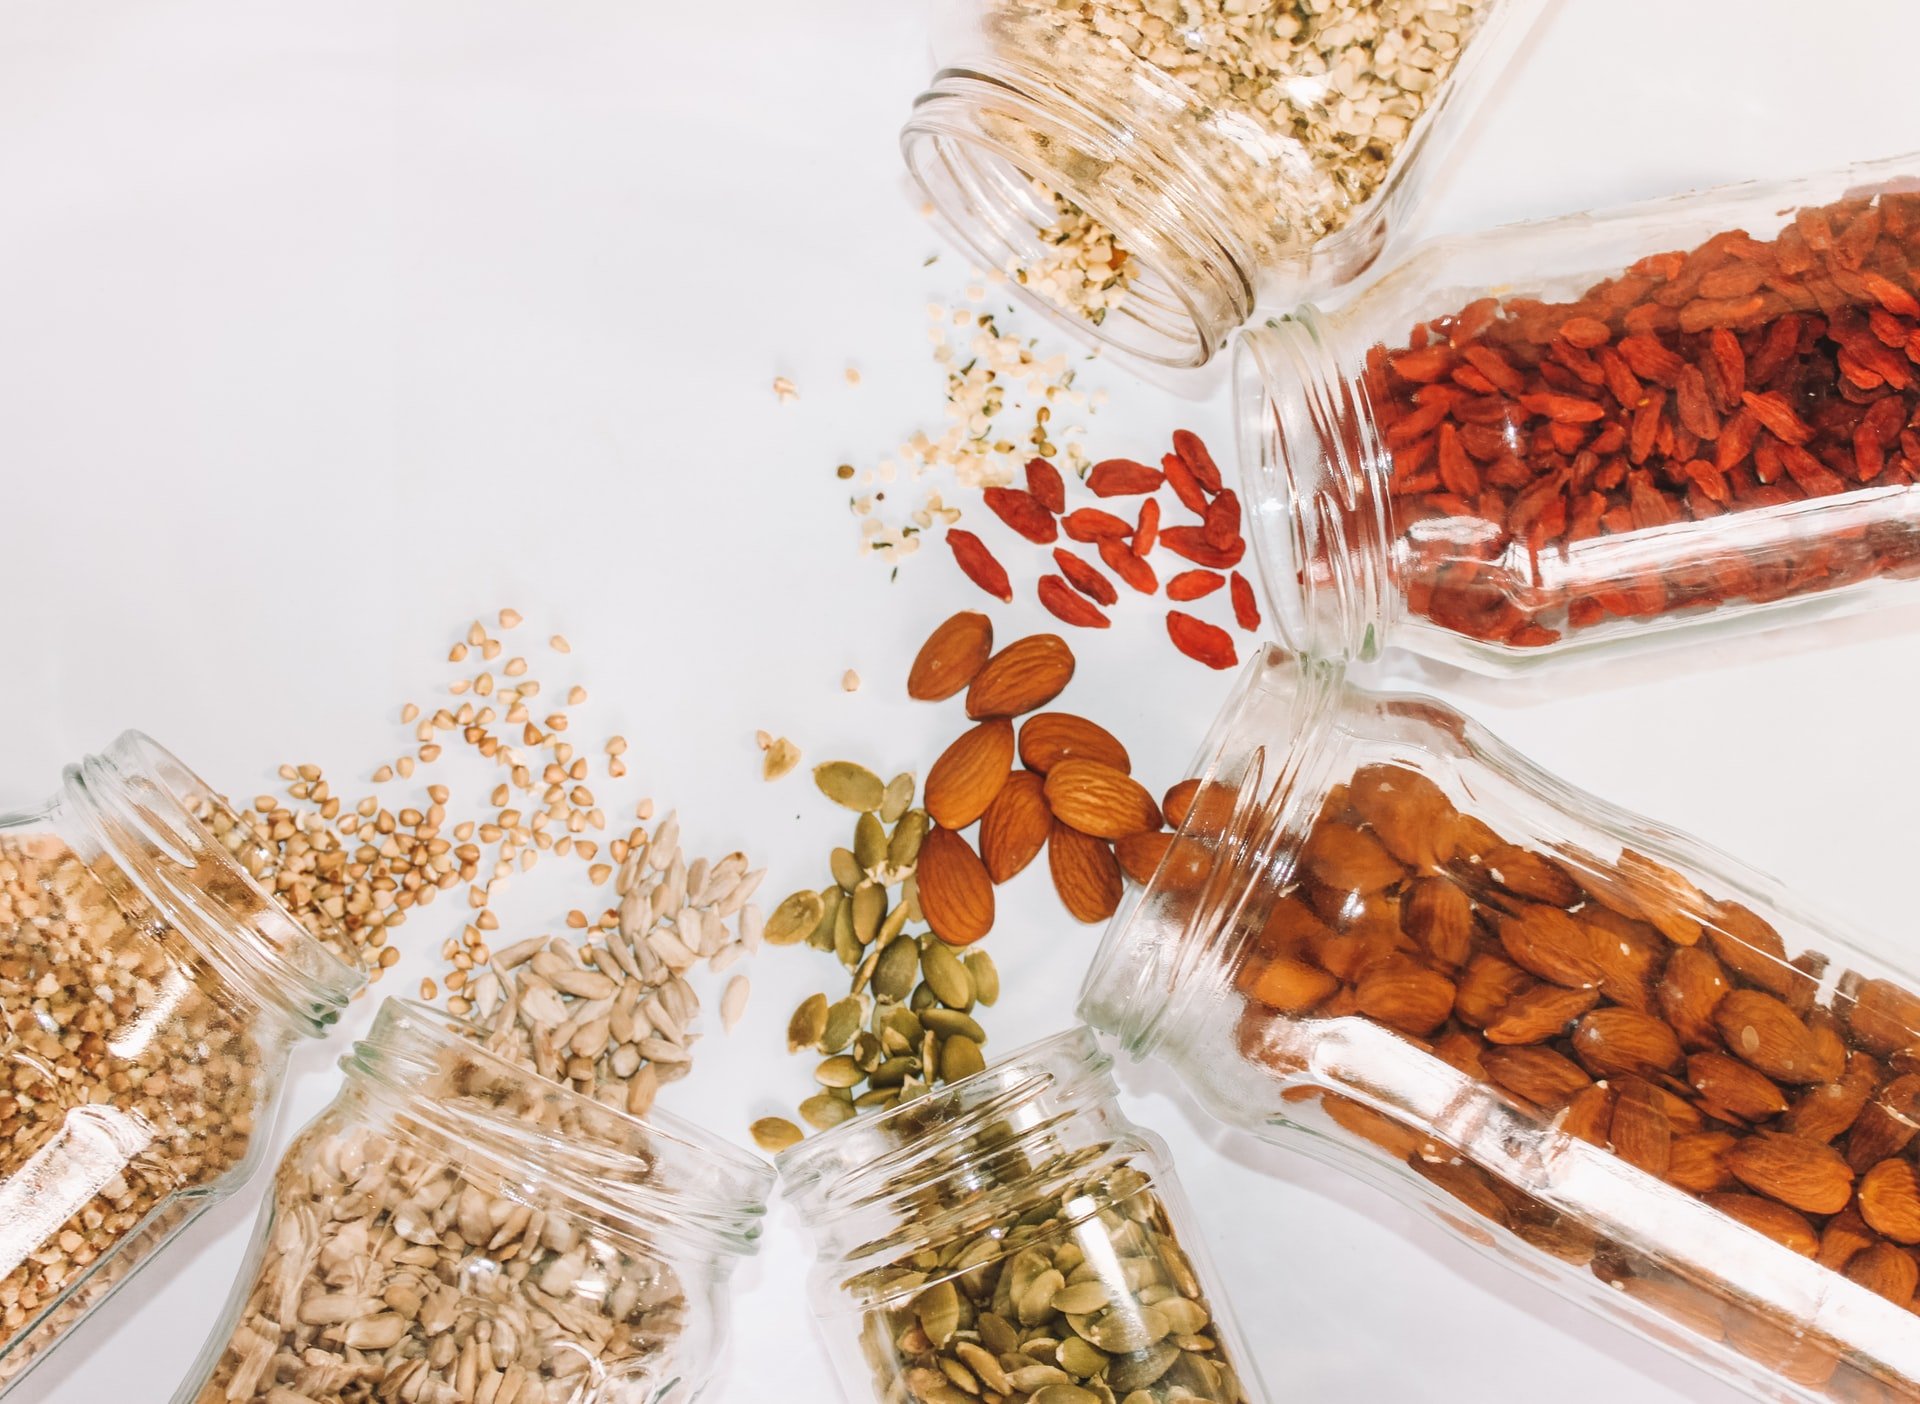 Comment manger des graines : idées variées